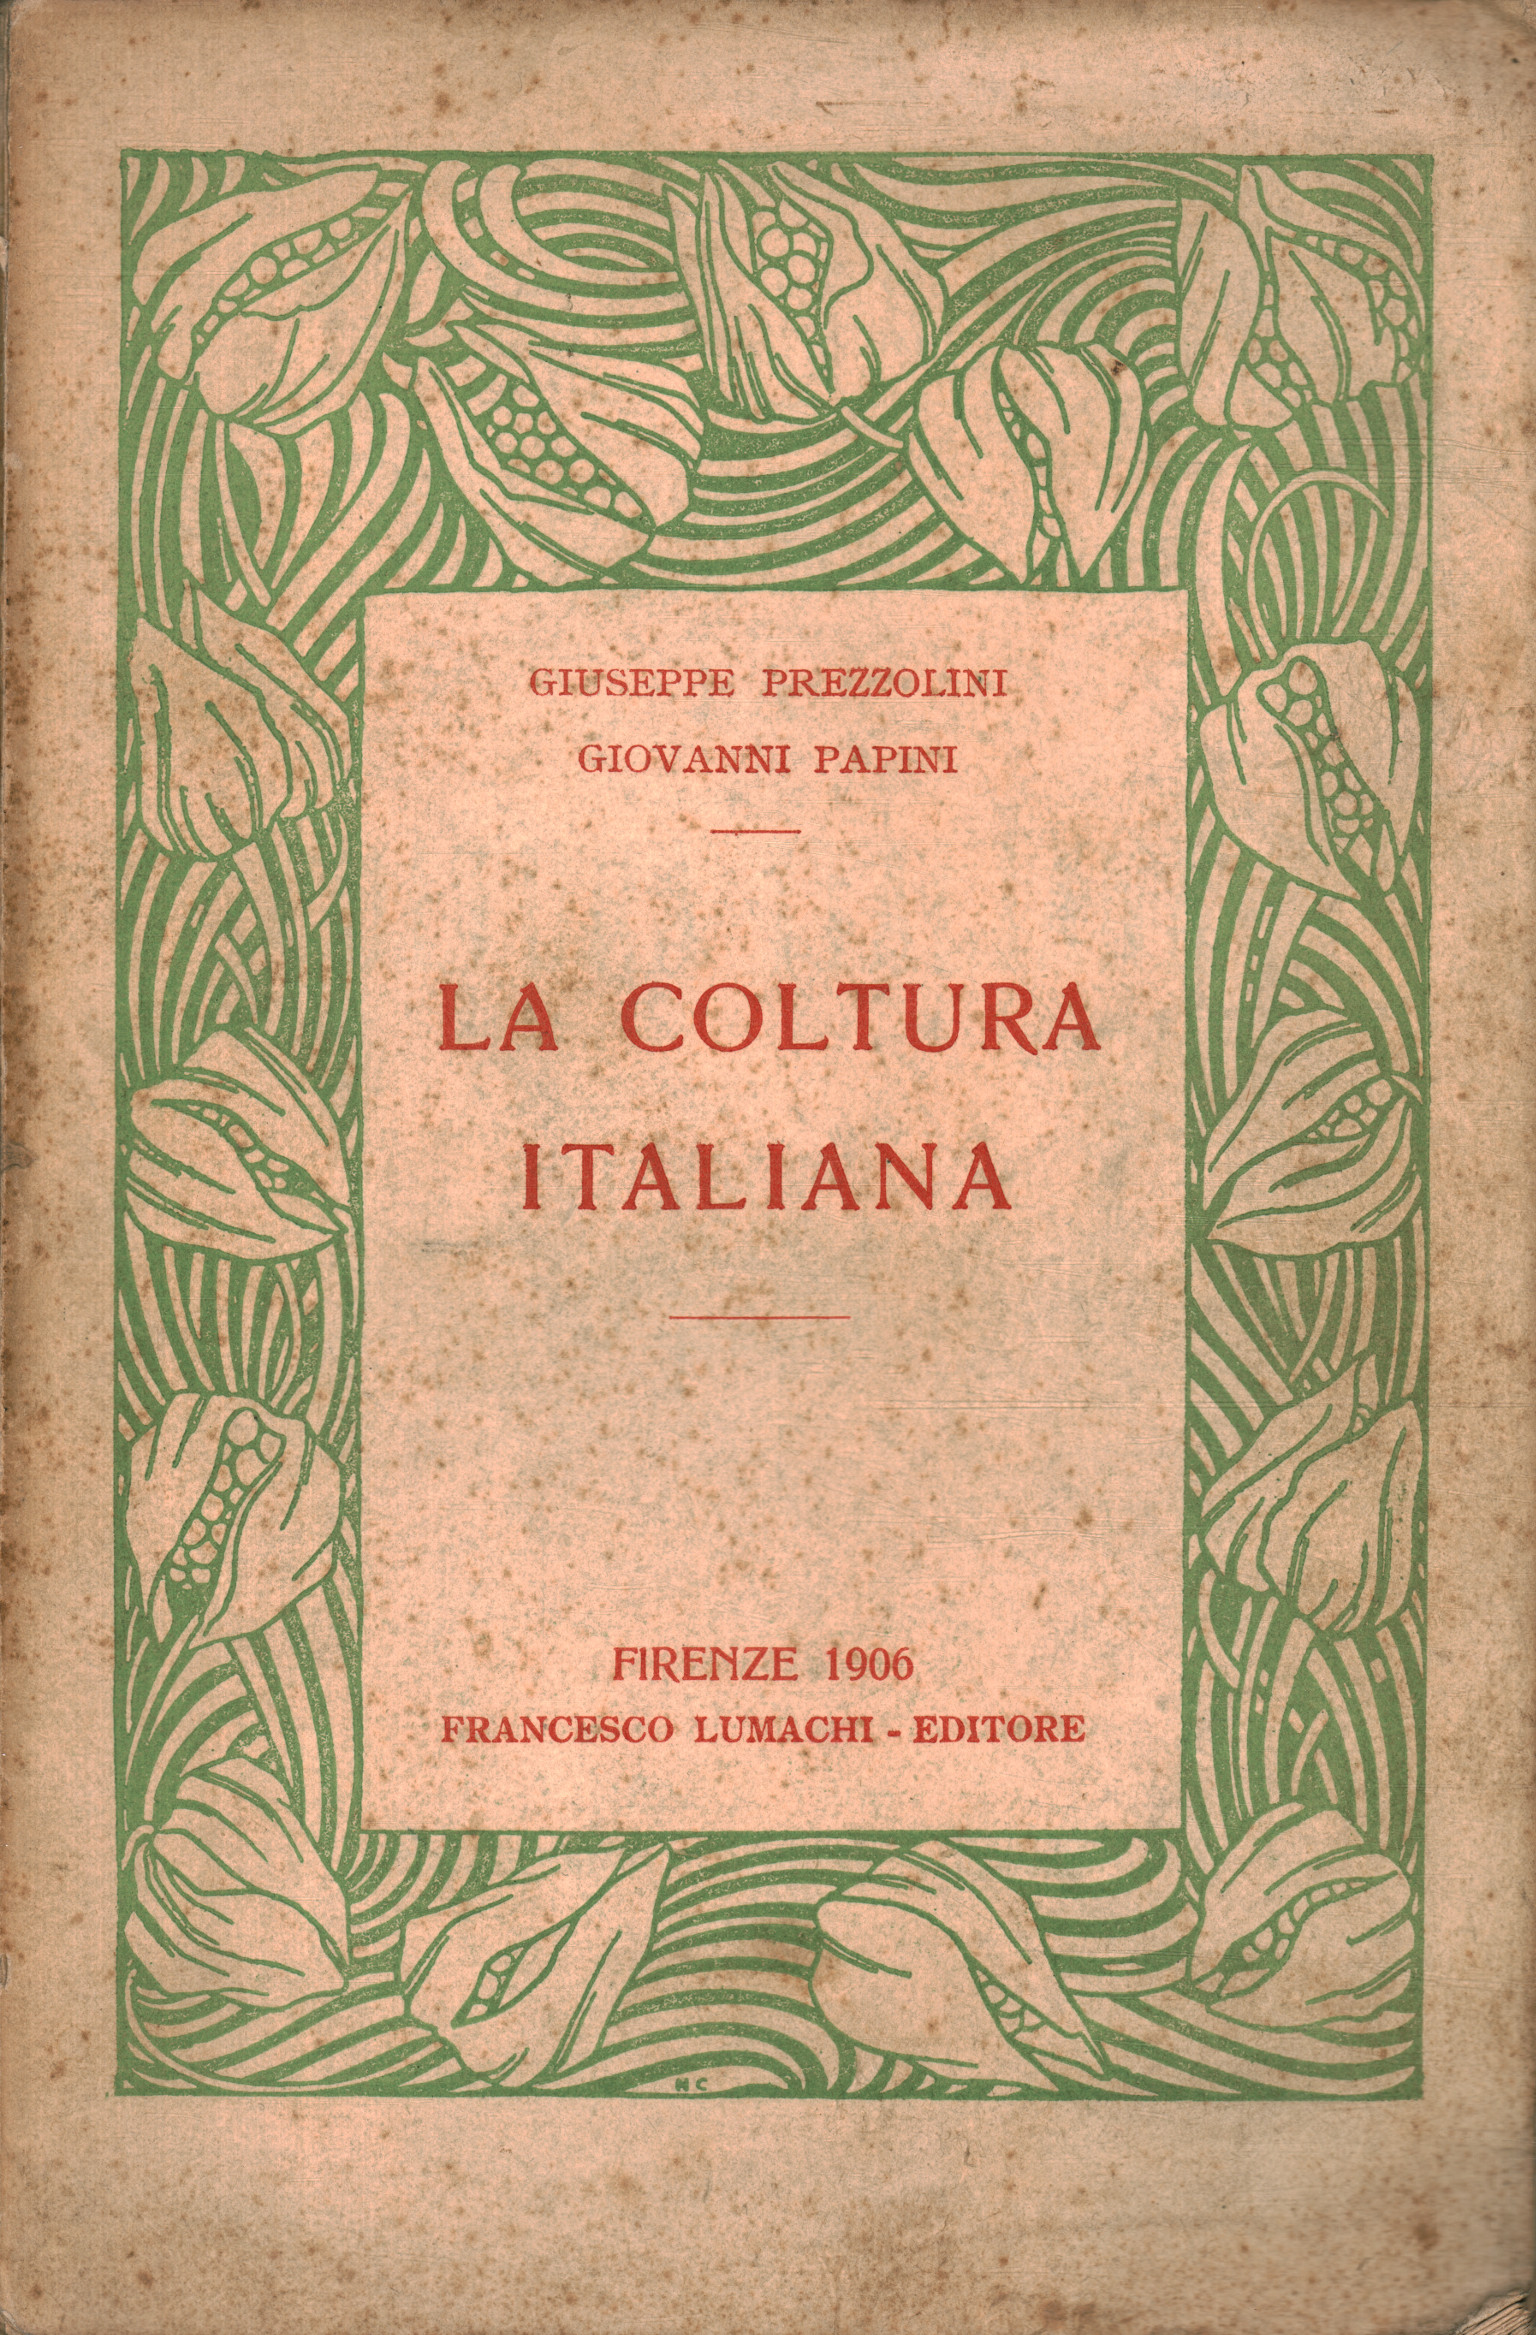 La coltura italiana